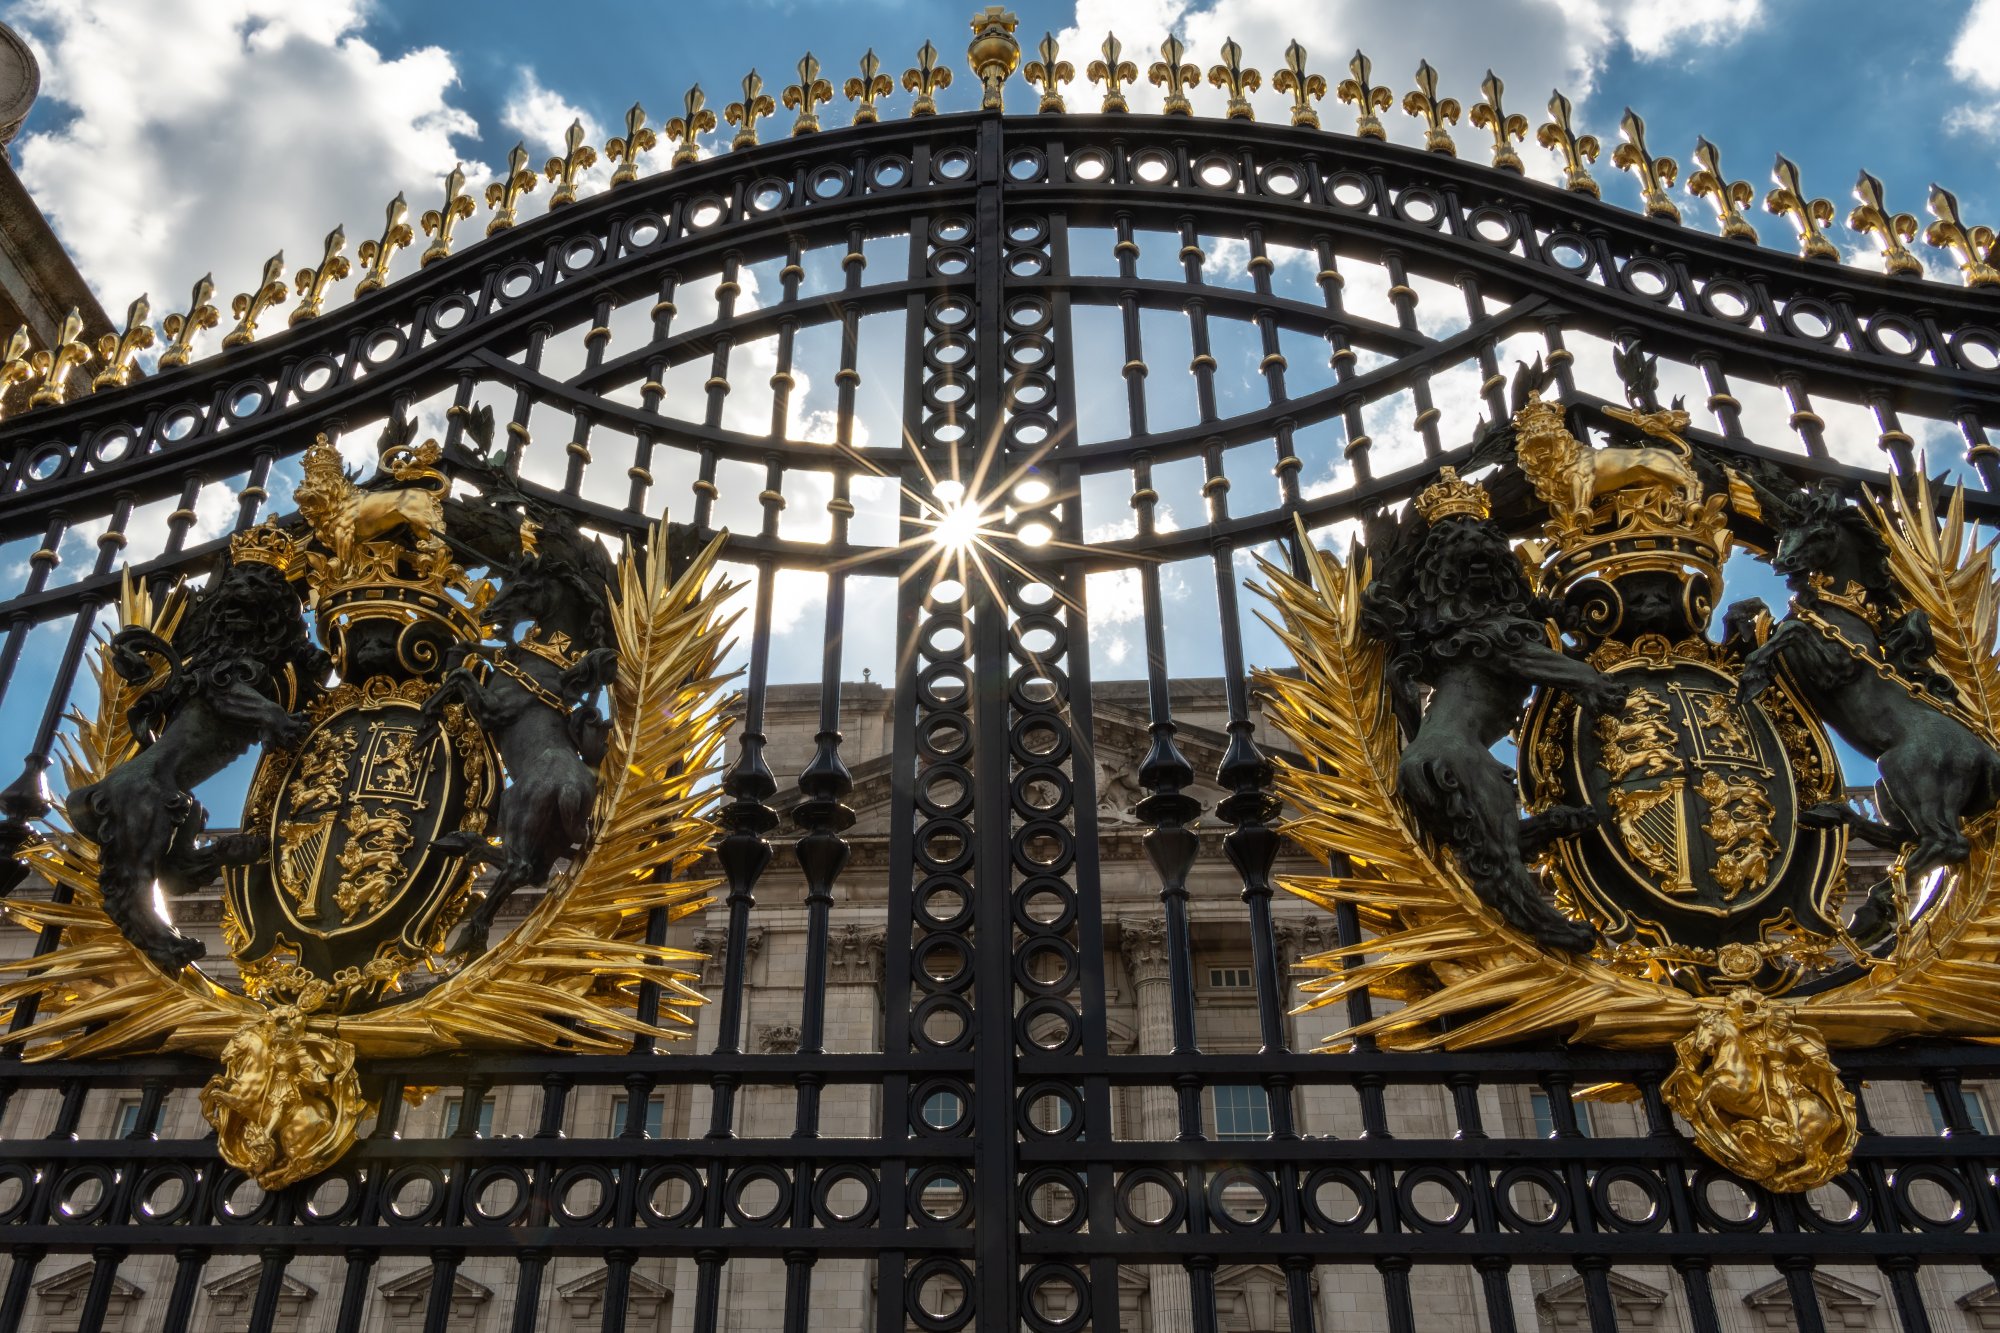 Γιατί οι Βρετανοί βασιλείς δεν θέλουν να μένουν στο παλάτι του Μπάκιγχαμ